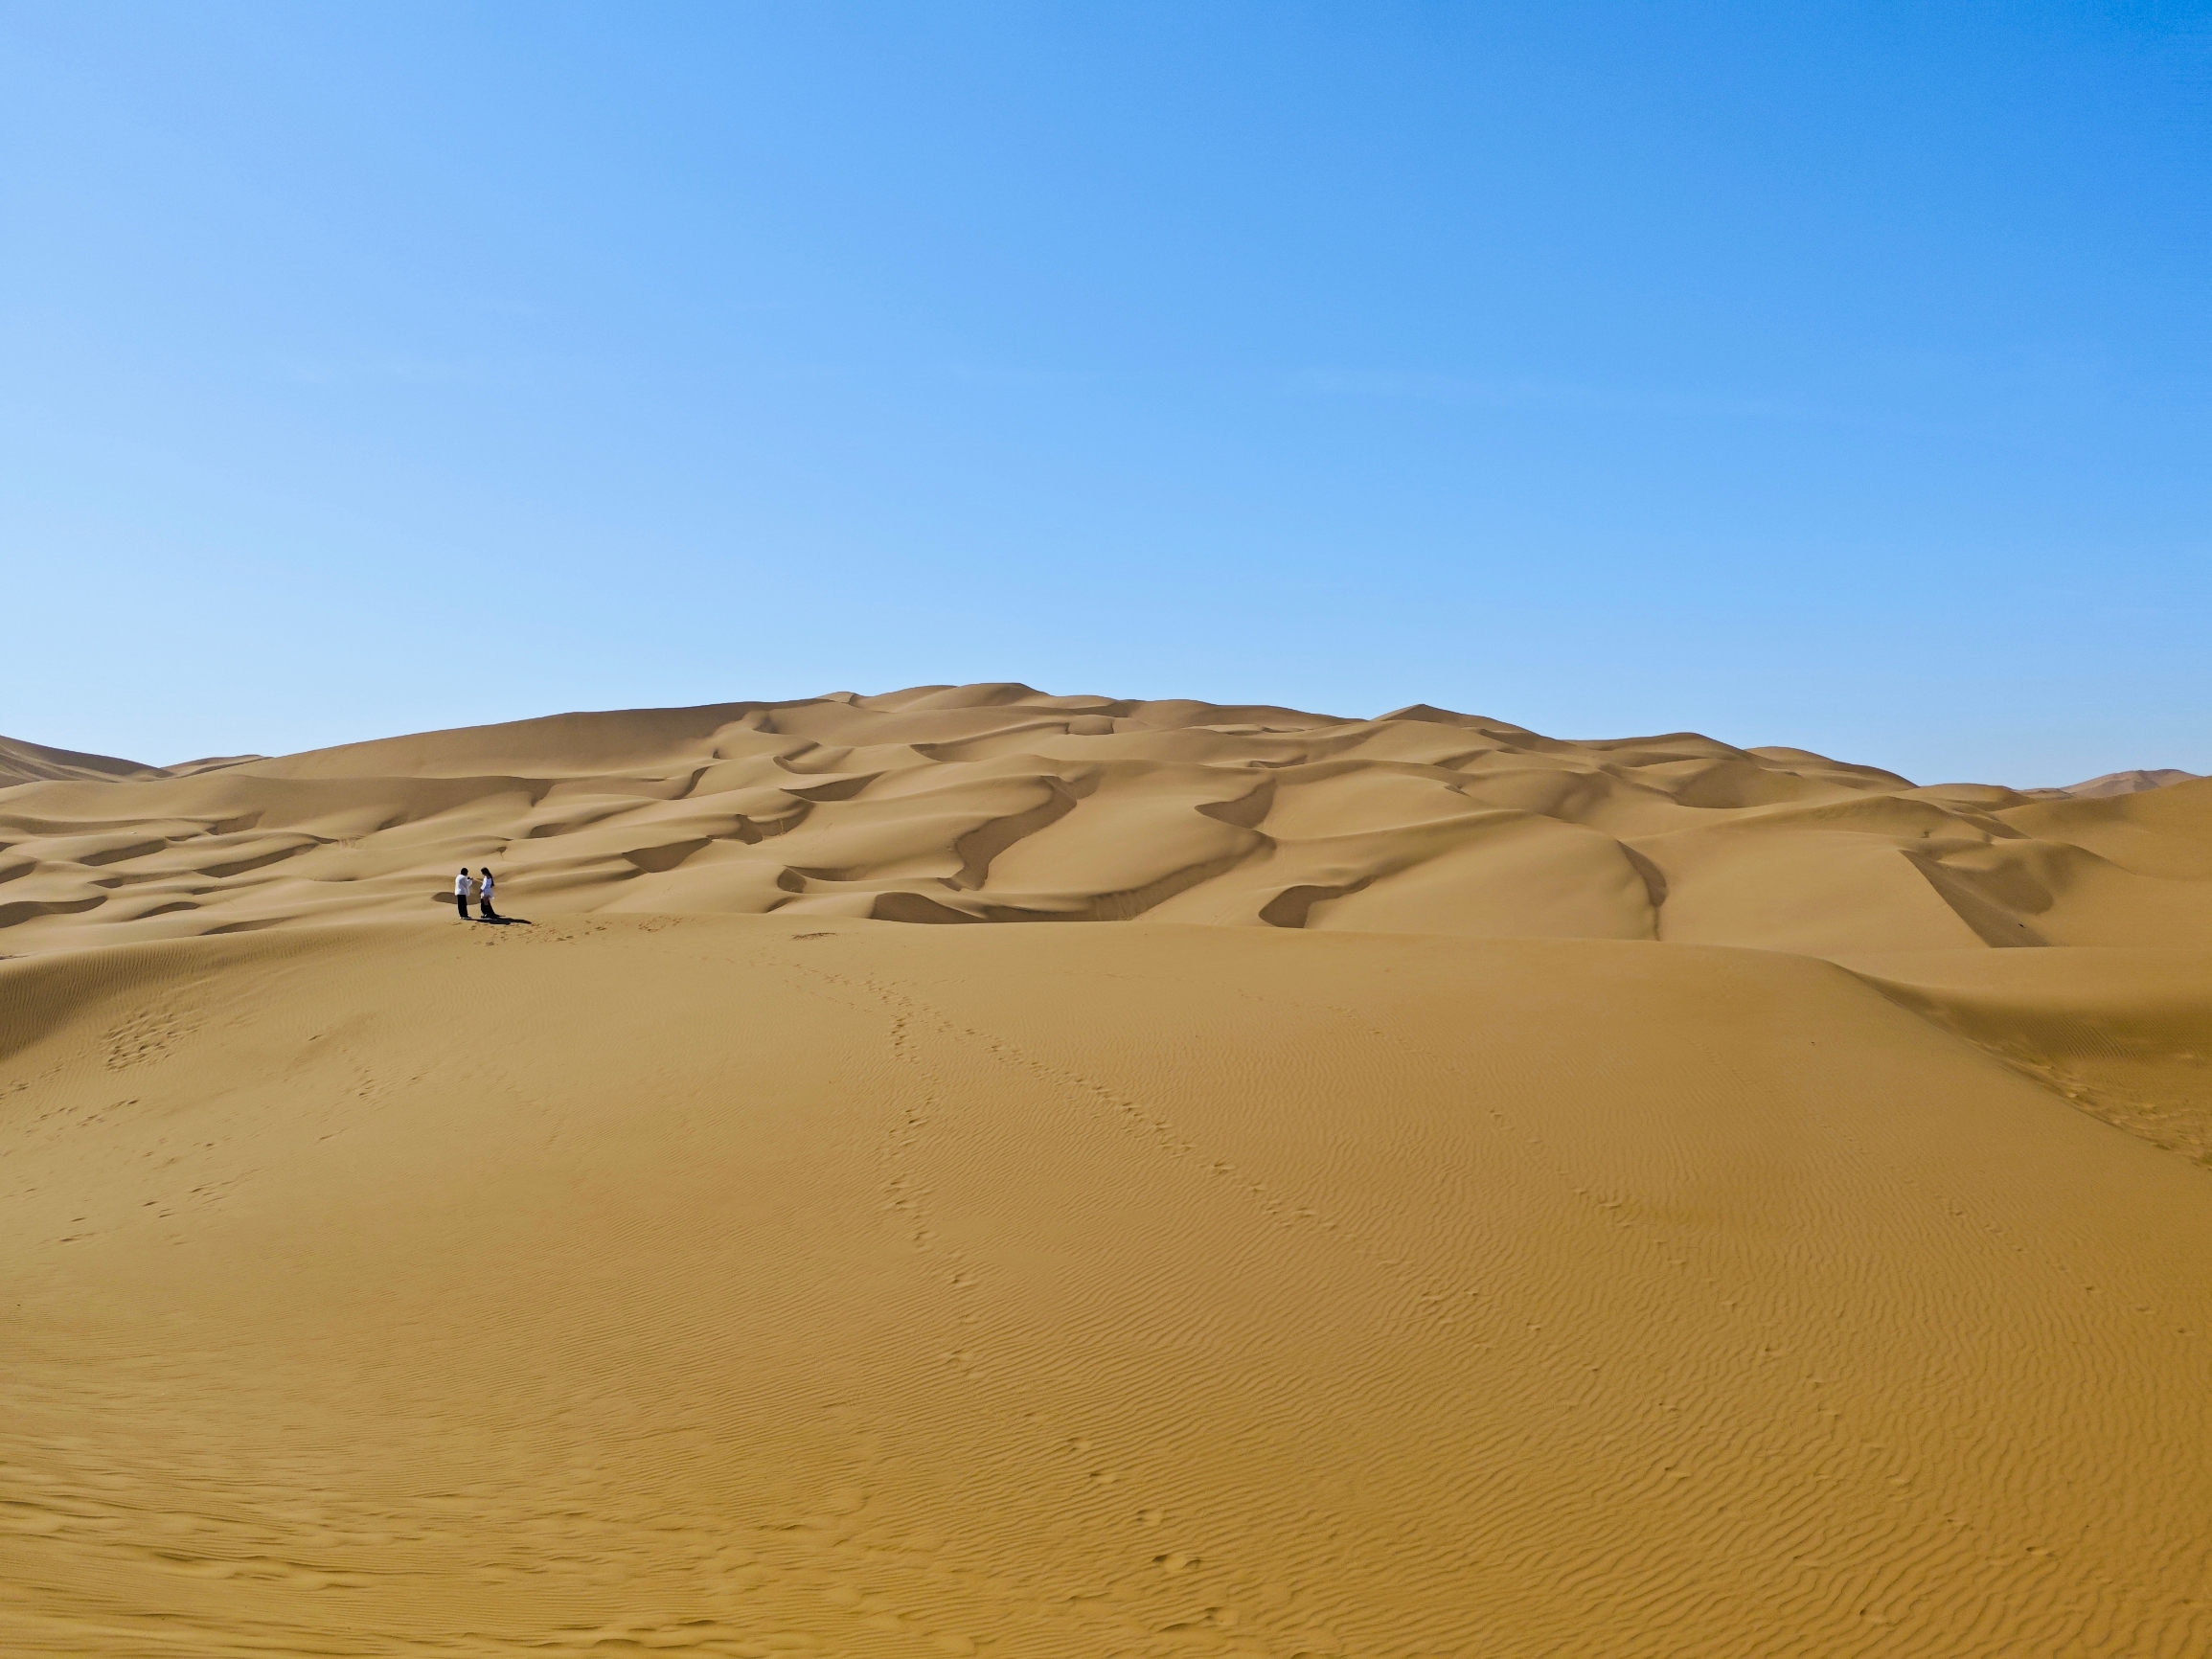 新疆游第3站:库木塔格沙漠第二高点看一半沙漠一半城